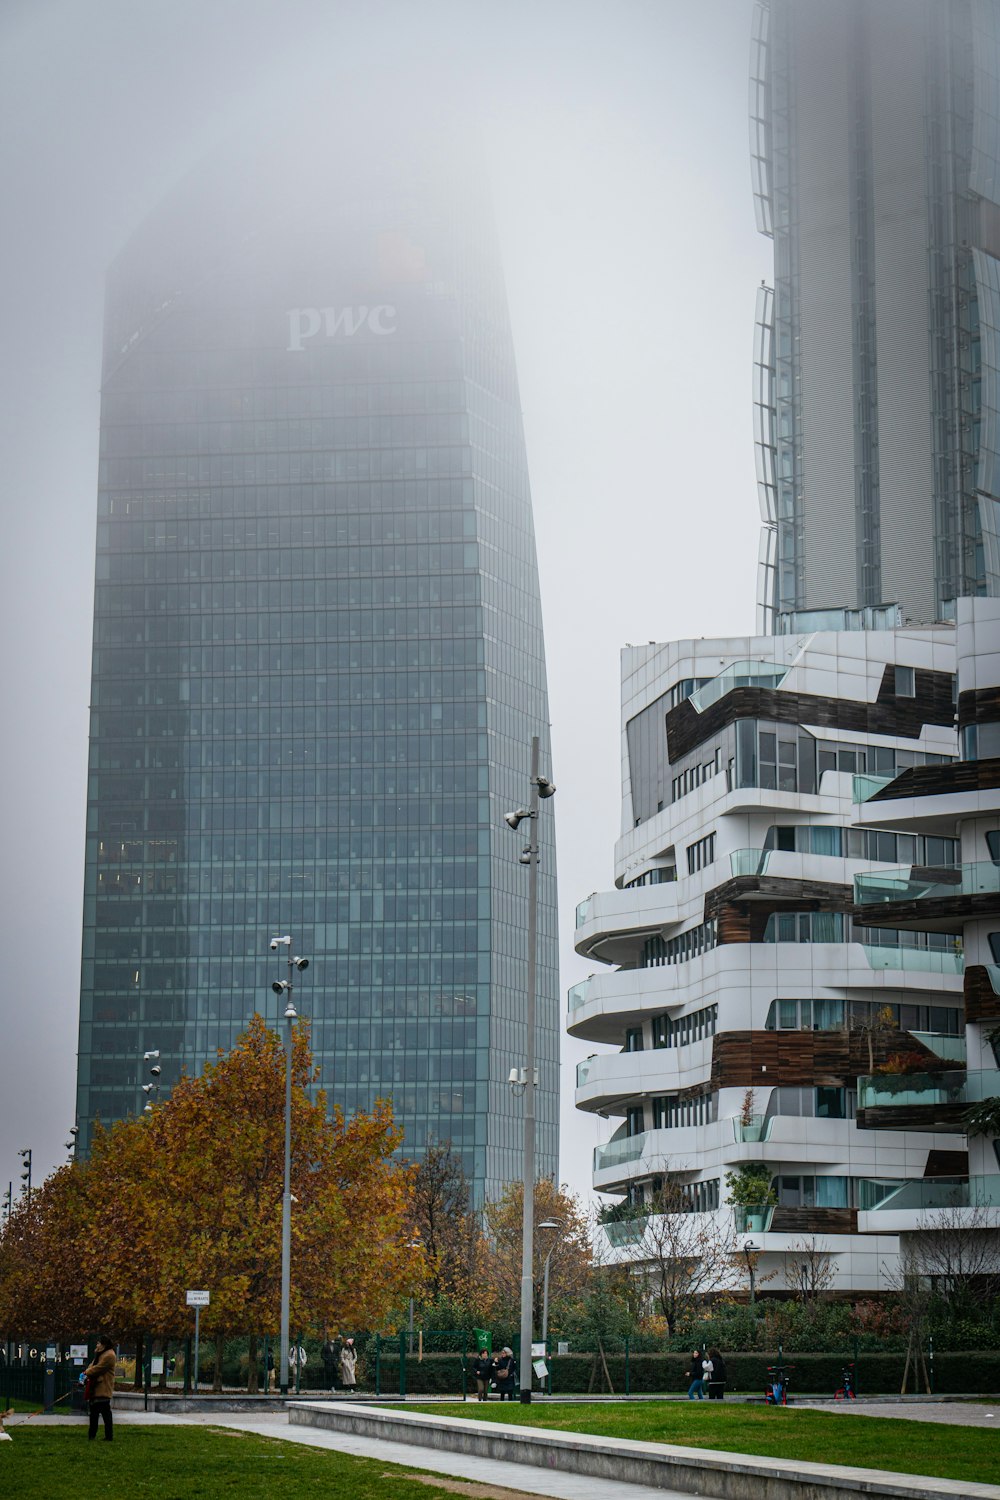 Une journée brumeuse dans une ville aux grands immeubles